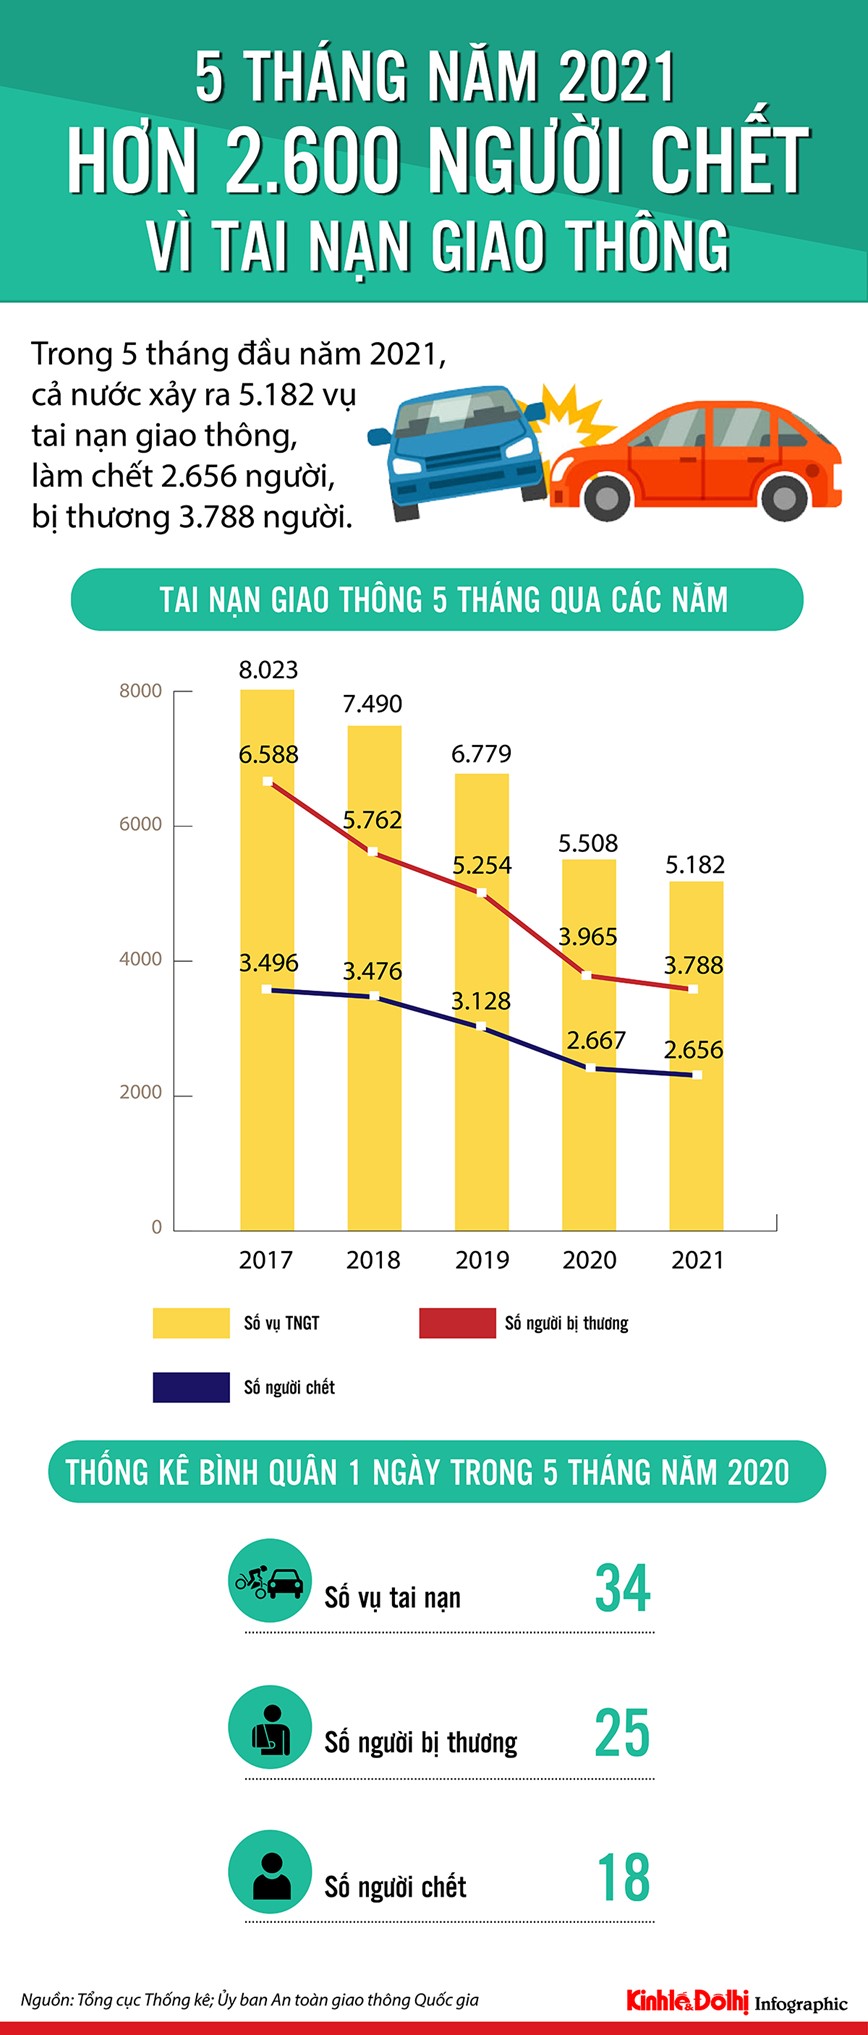 [Infographic] Hon 2.600 nguoi chet vi tai nan giao thong trong 5 thang dau nam 2021 - Hinh anh 1